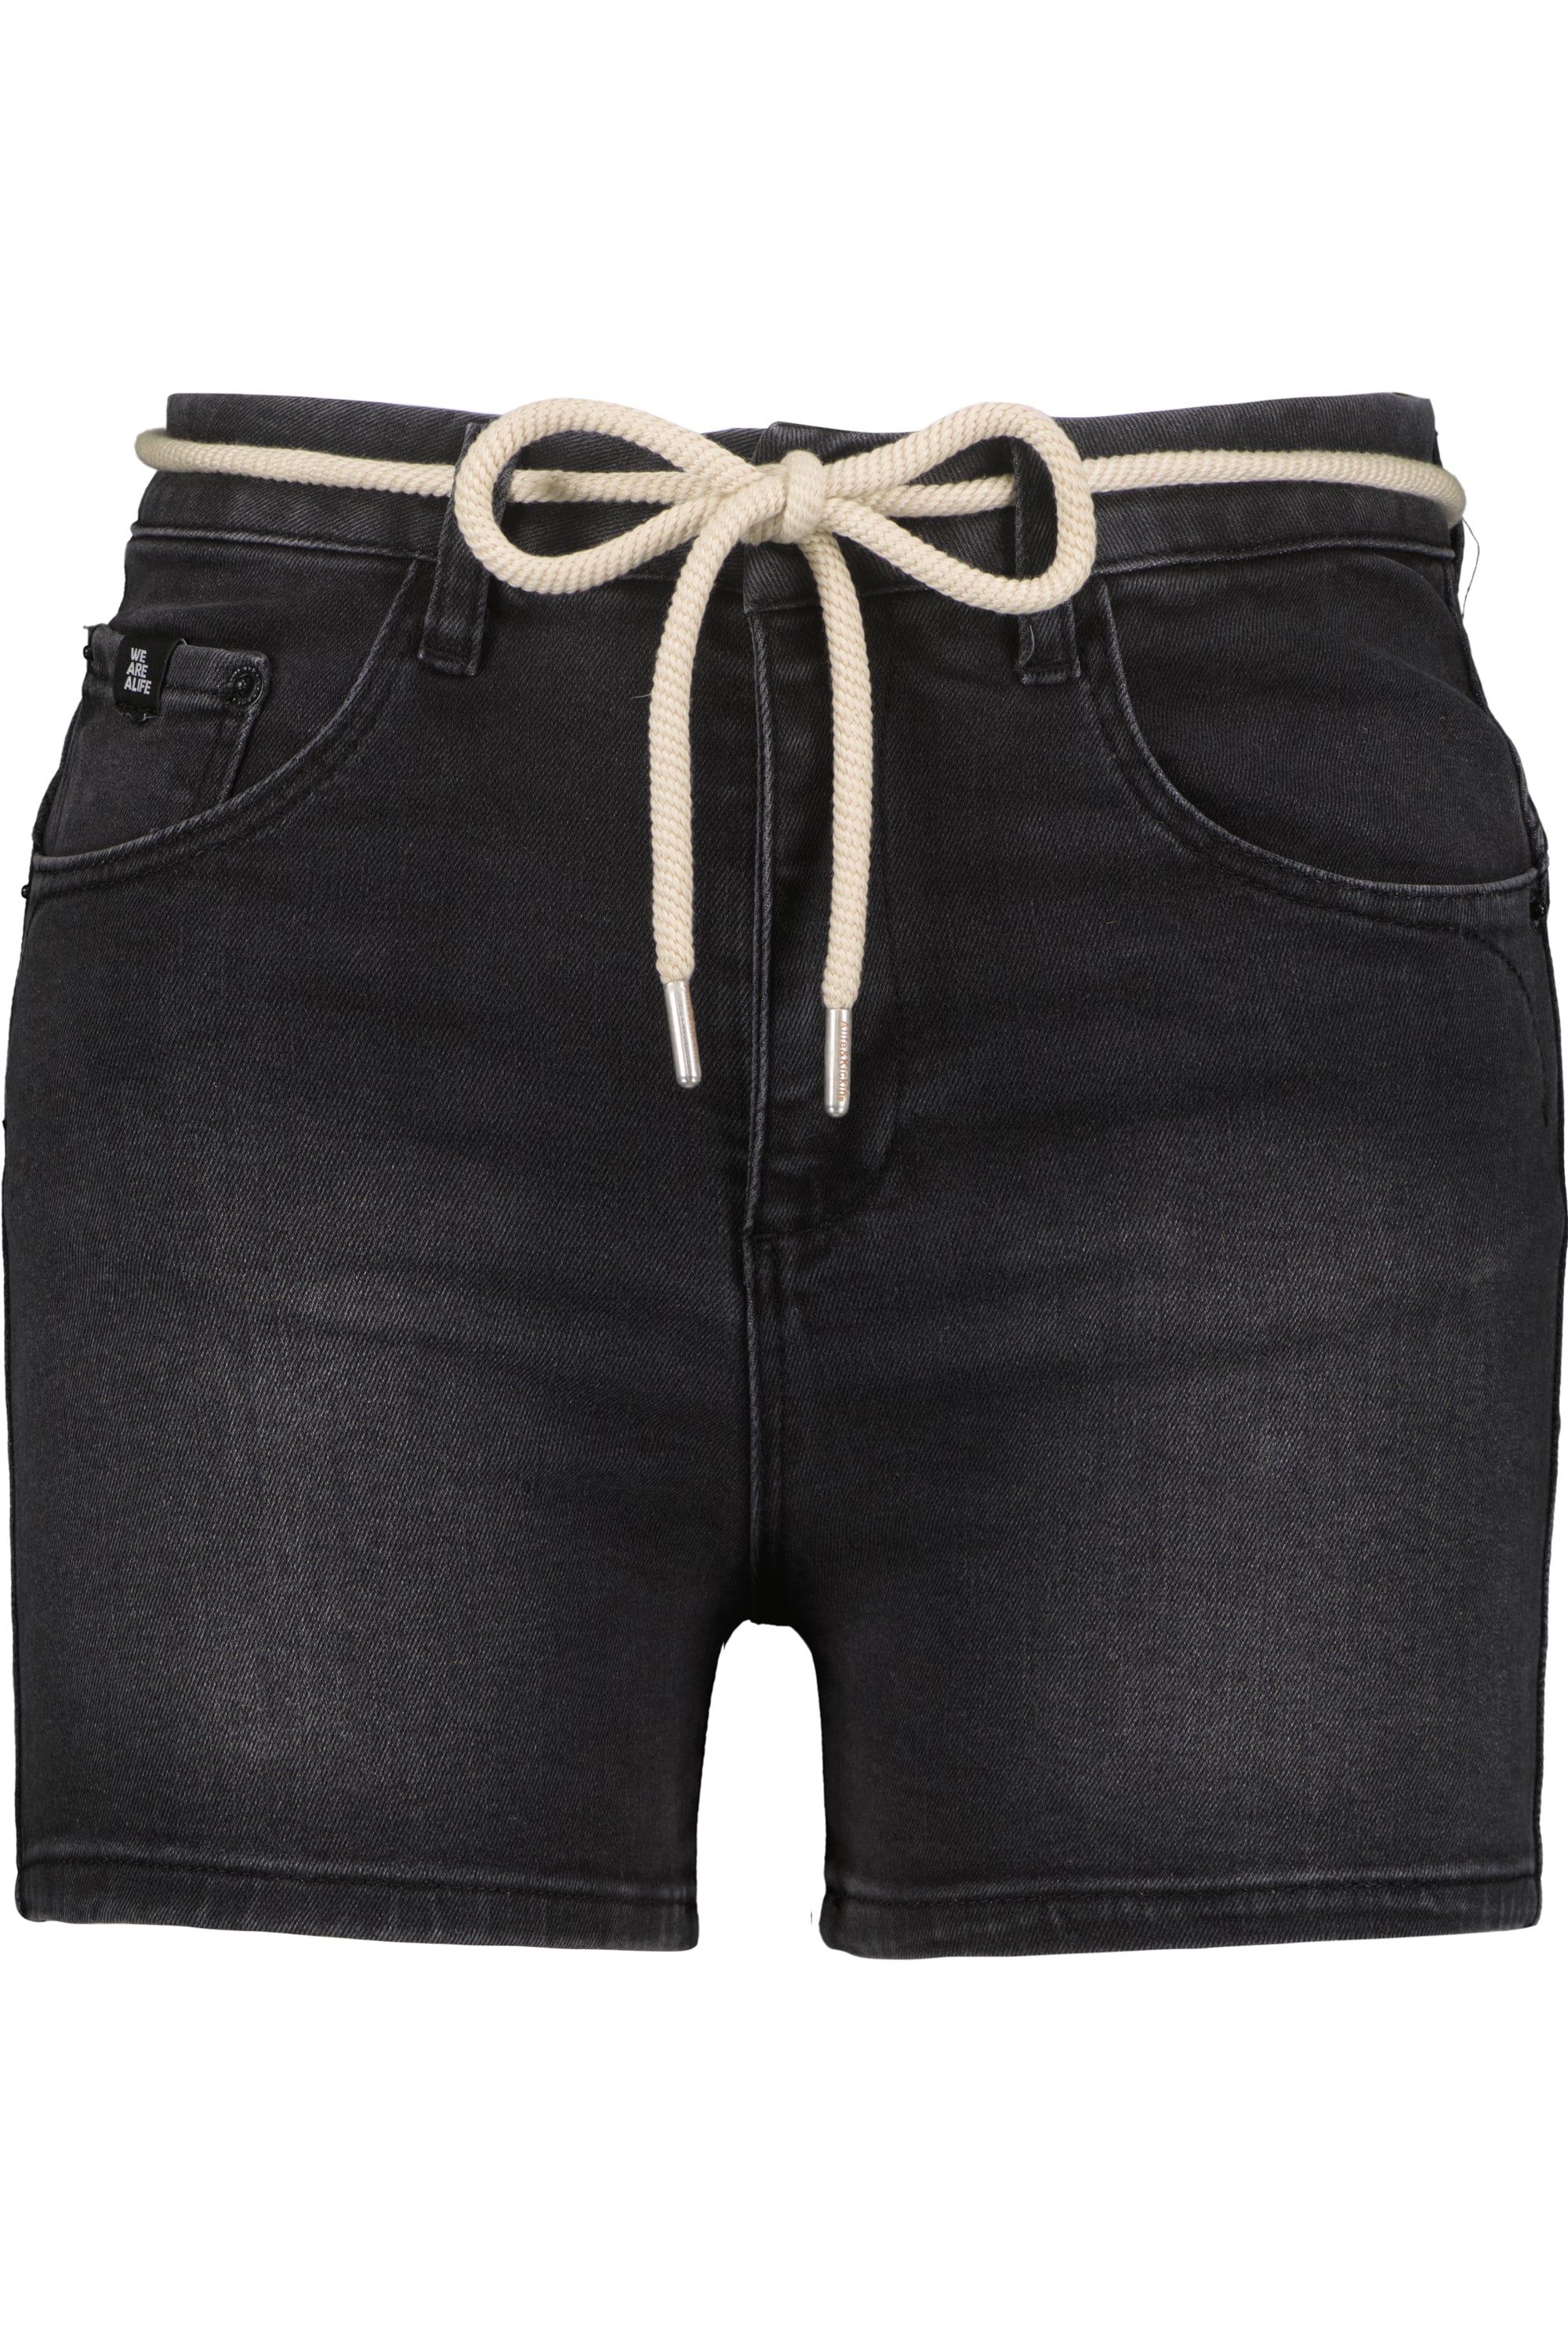 JanaAK DNM Q - Lässige Jeans Shorts für Damen Schwarz